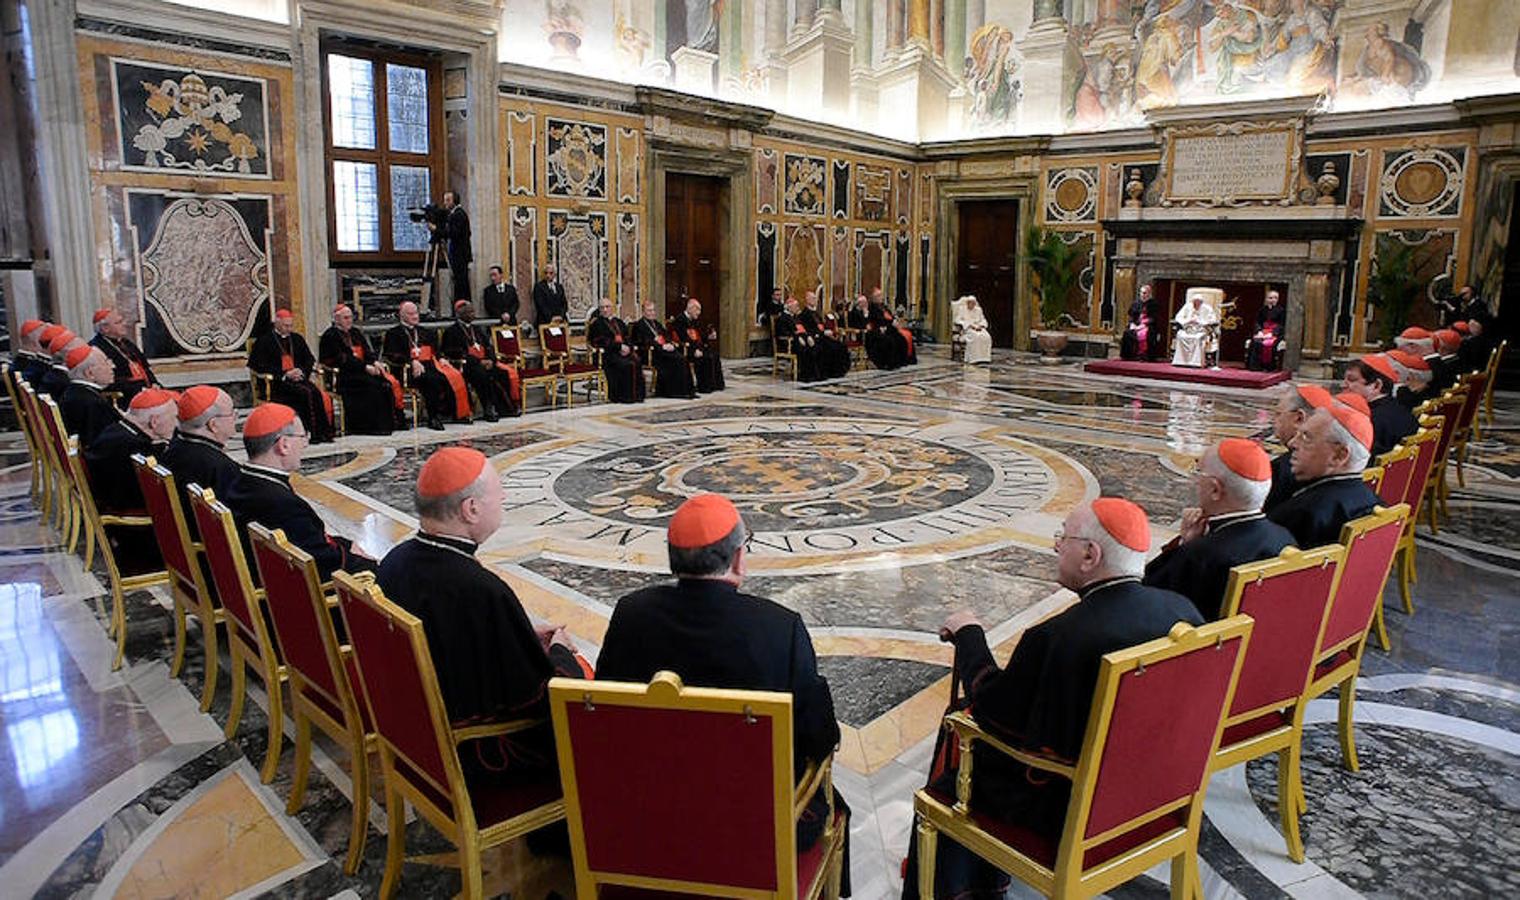 Joseph Ratzinger volvió a la sala clementina donde renunció al Pontificado. Elogió a Francisco por su bondad y cuidados